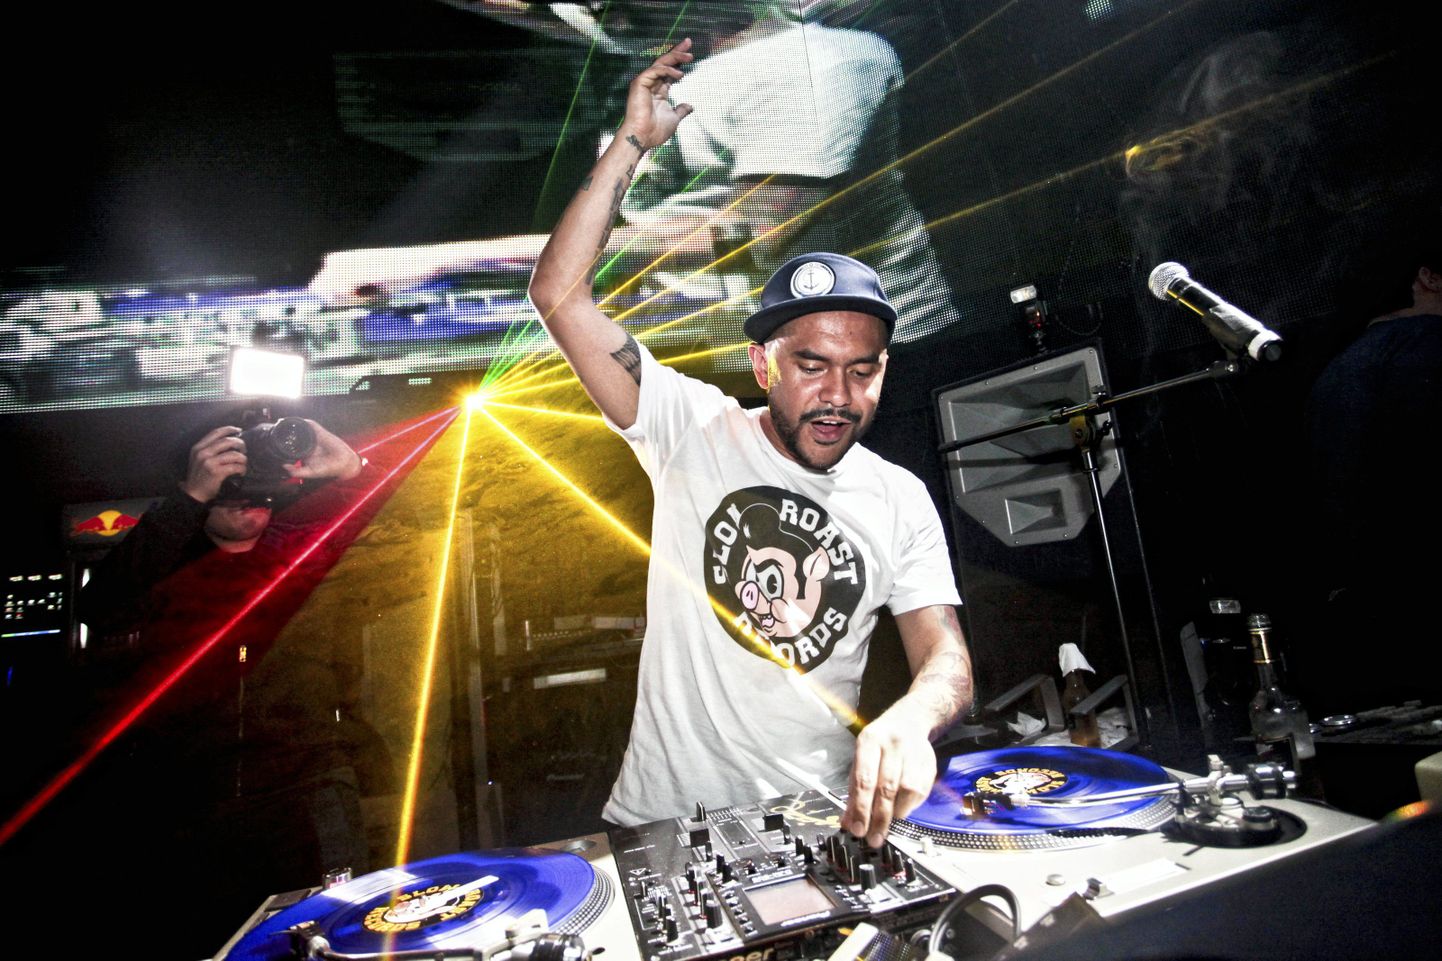 DJ Craze